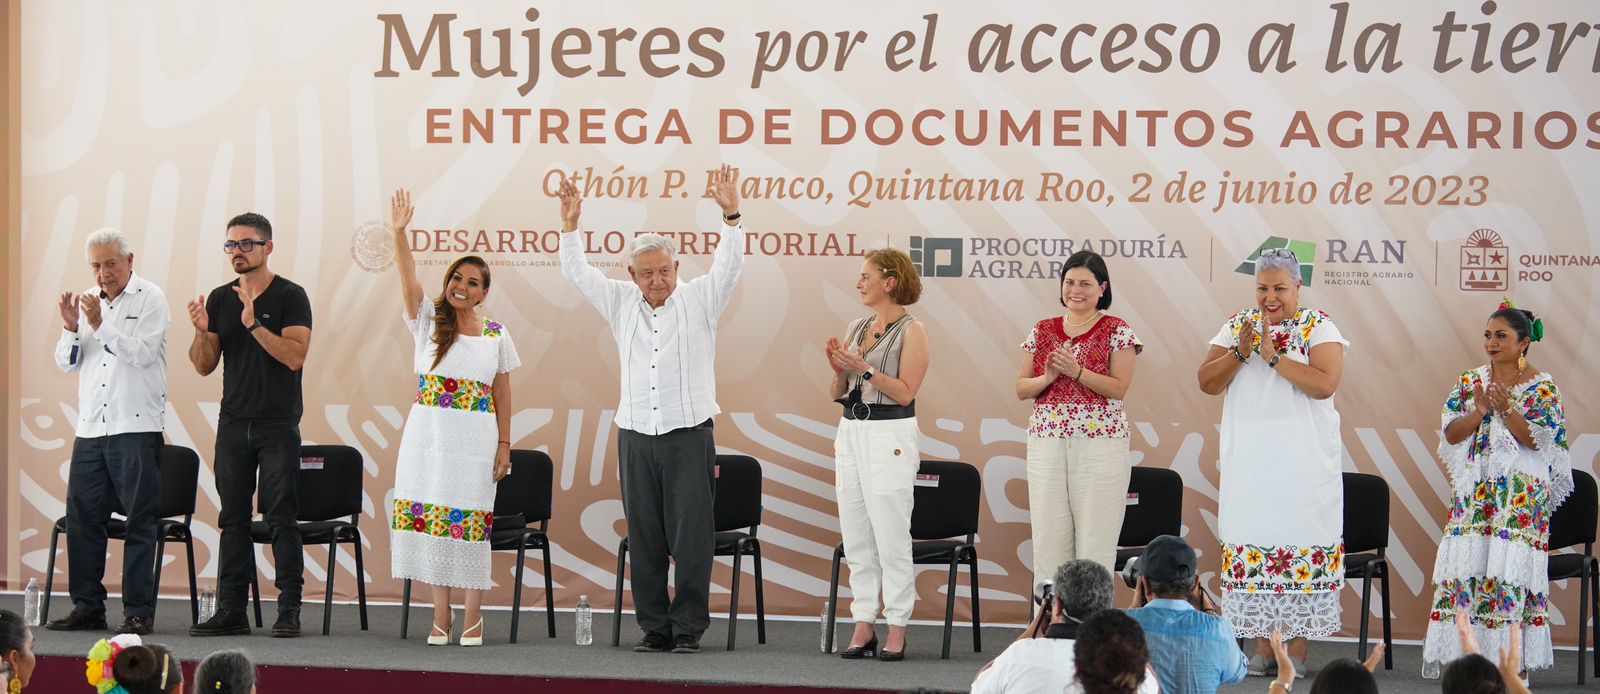 El Presidente López Obrador y Mara Lezama en hecho histórico, entregan documentos agrarios a mujeres en Chetumal